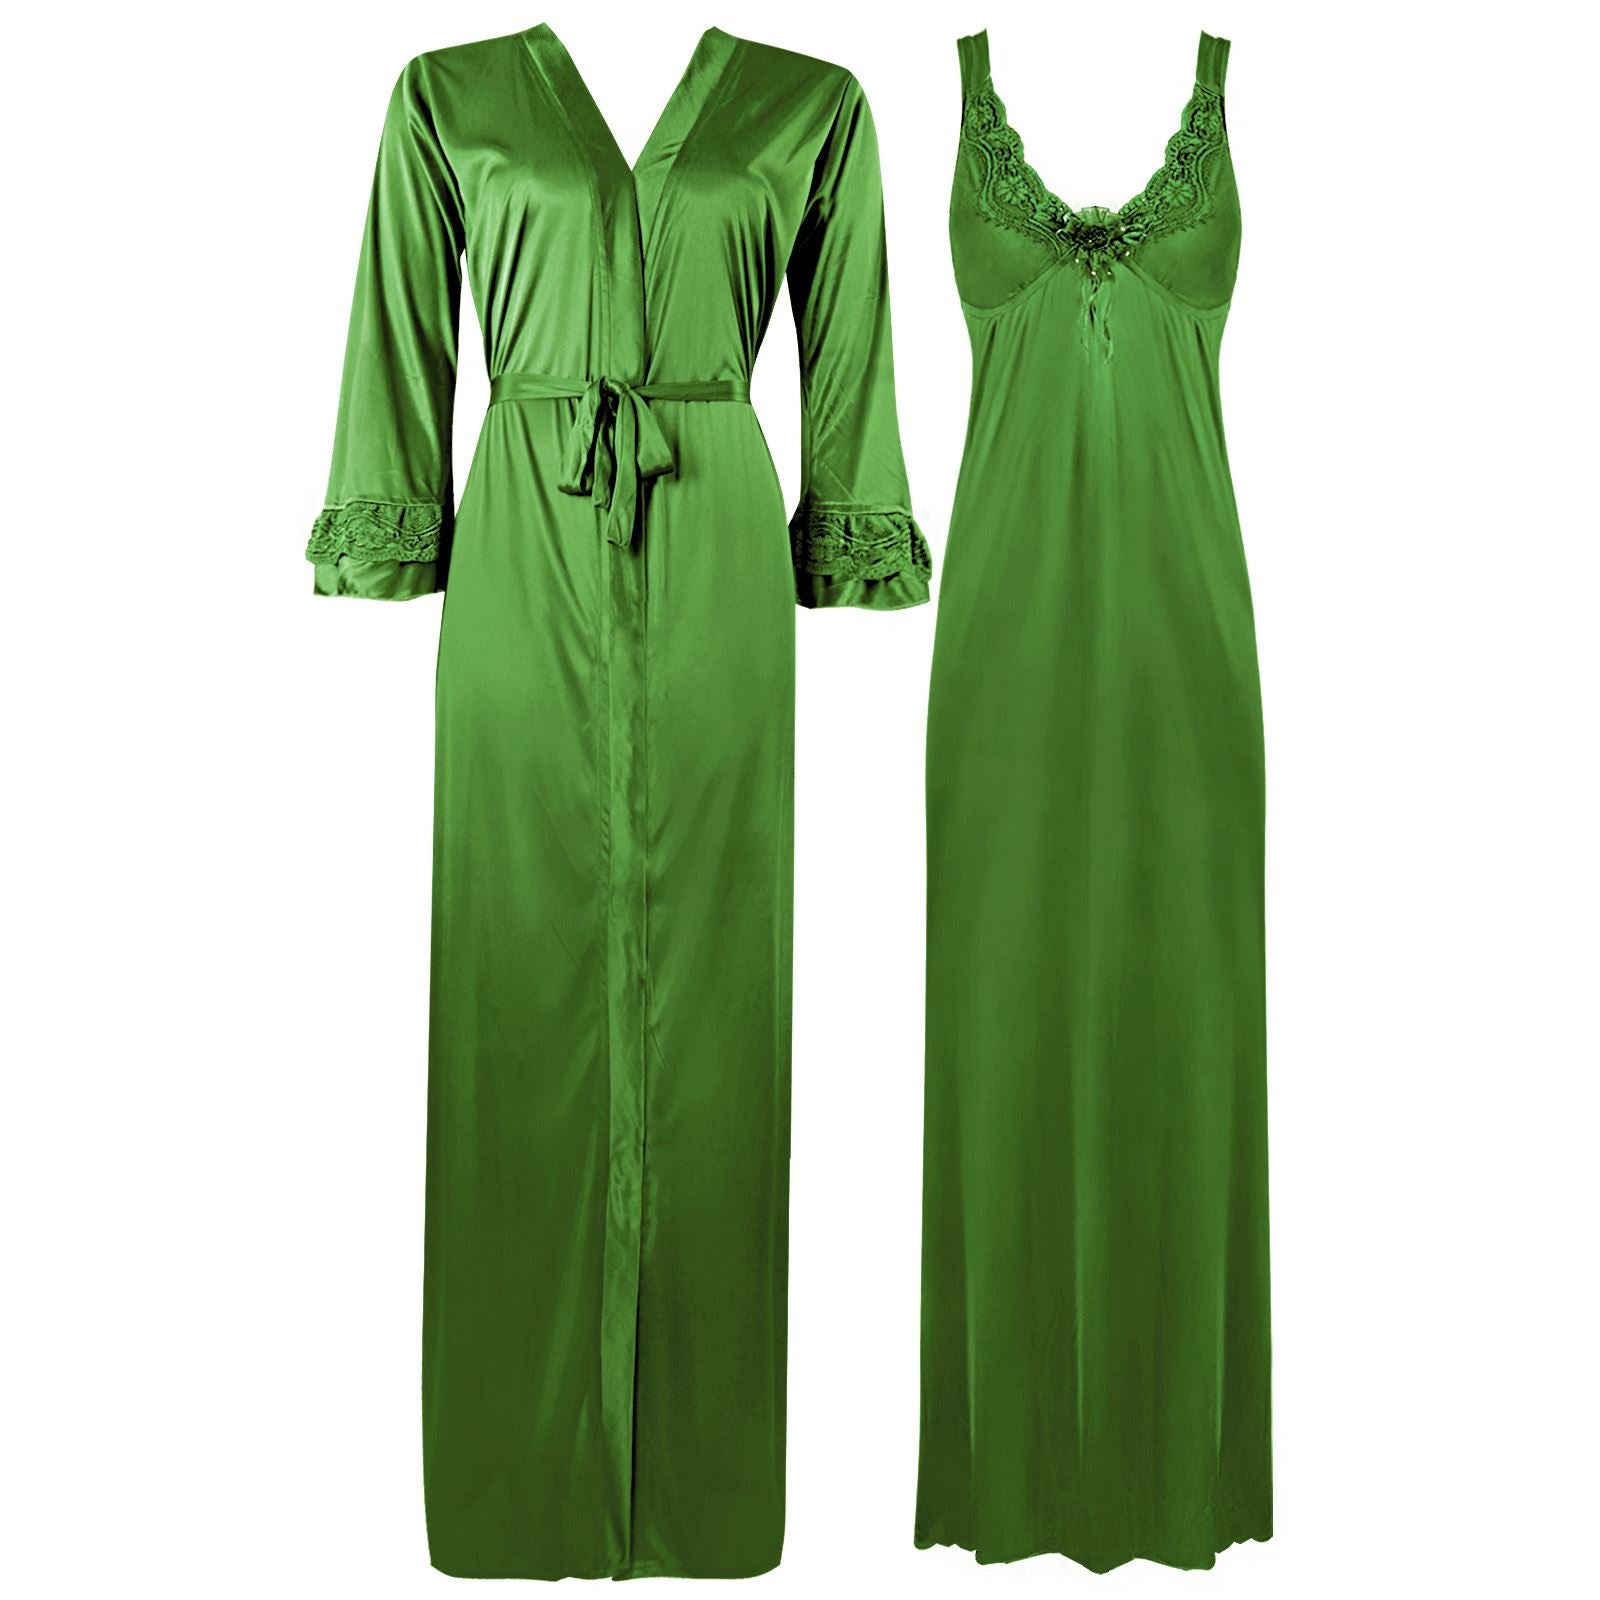 Green / XL ELEGANT DESIGNER WOMENS LONG NIGHTIE LADIES FULL SLEEVE NIGHTWEAR SET 8-14 The Orange Tags